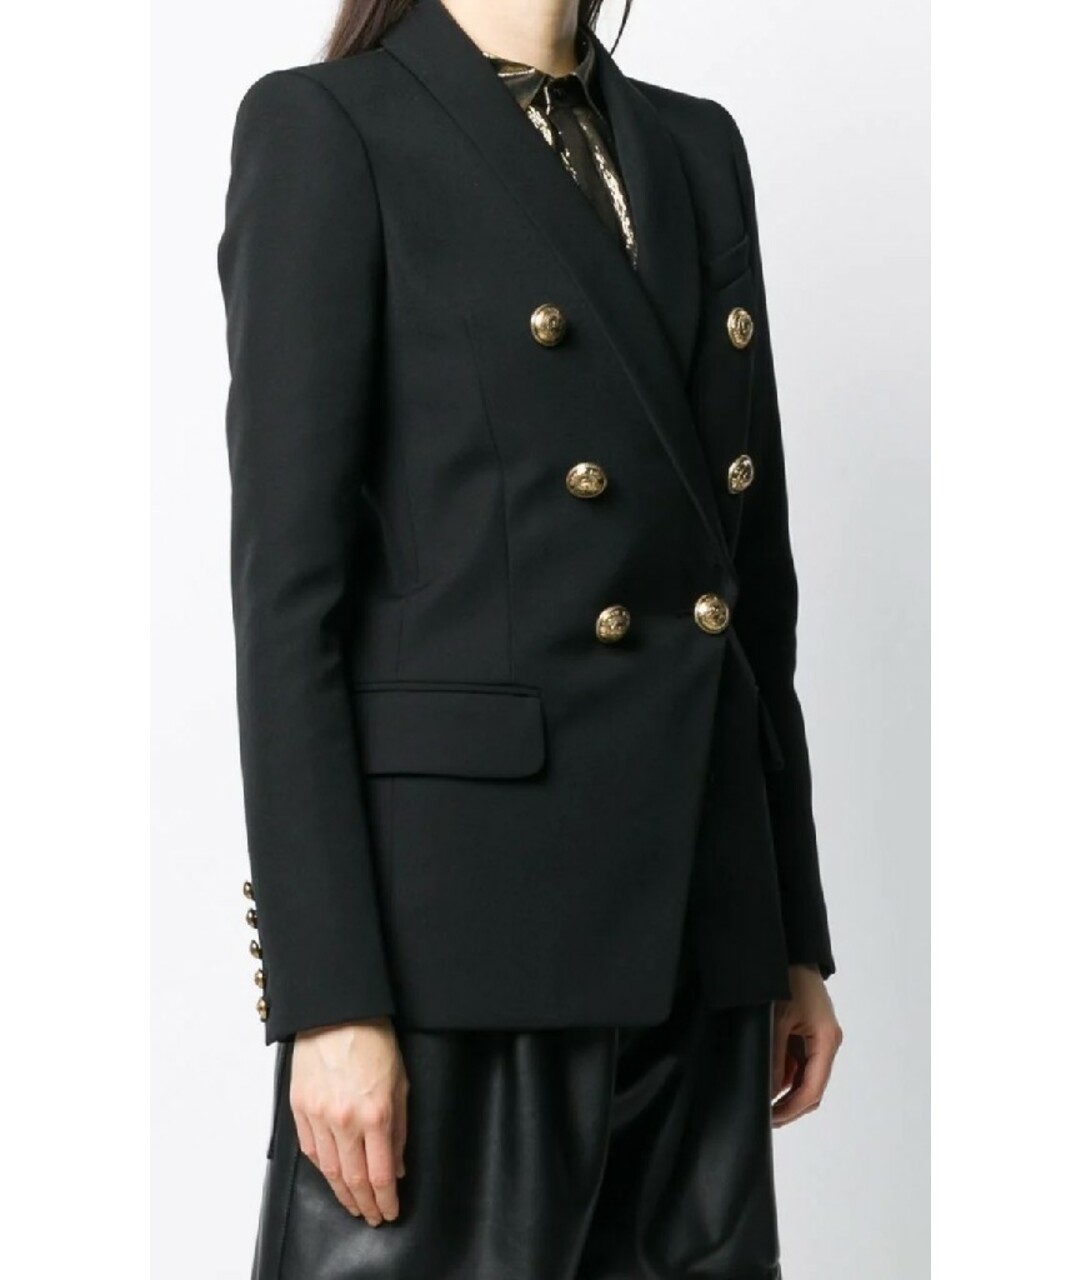 BALMAIN Черный жакет/пиджак, фото 2